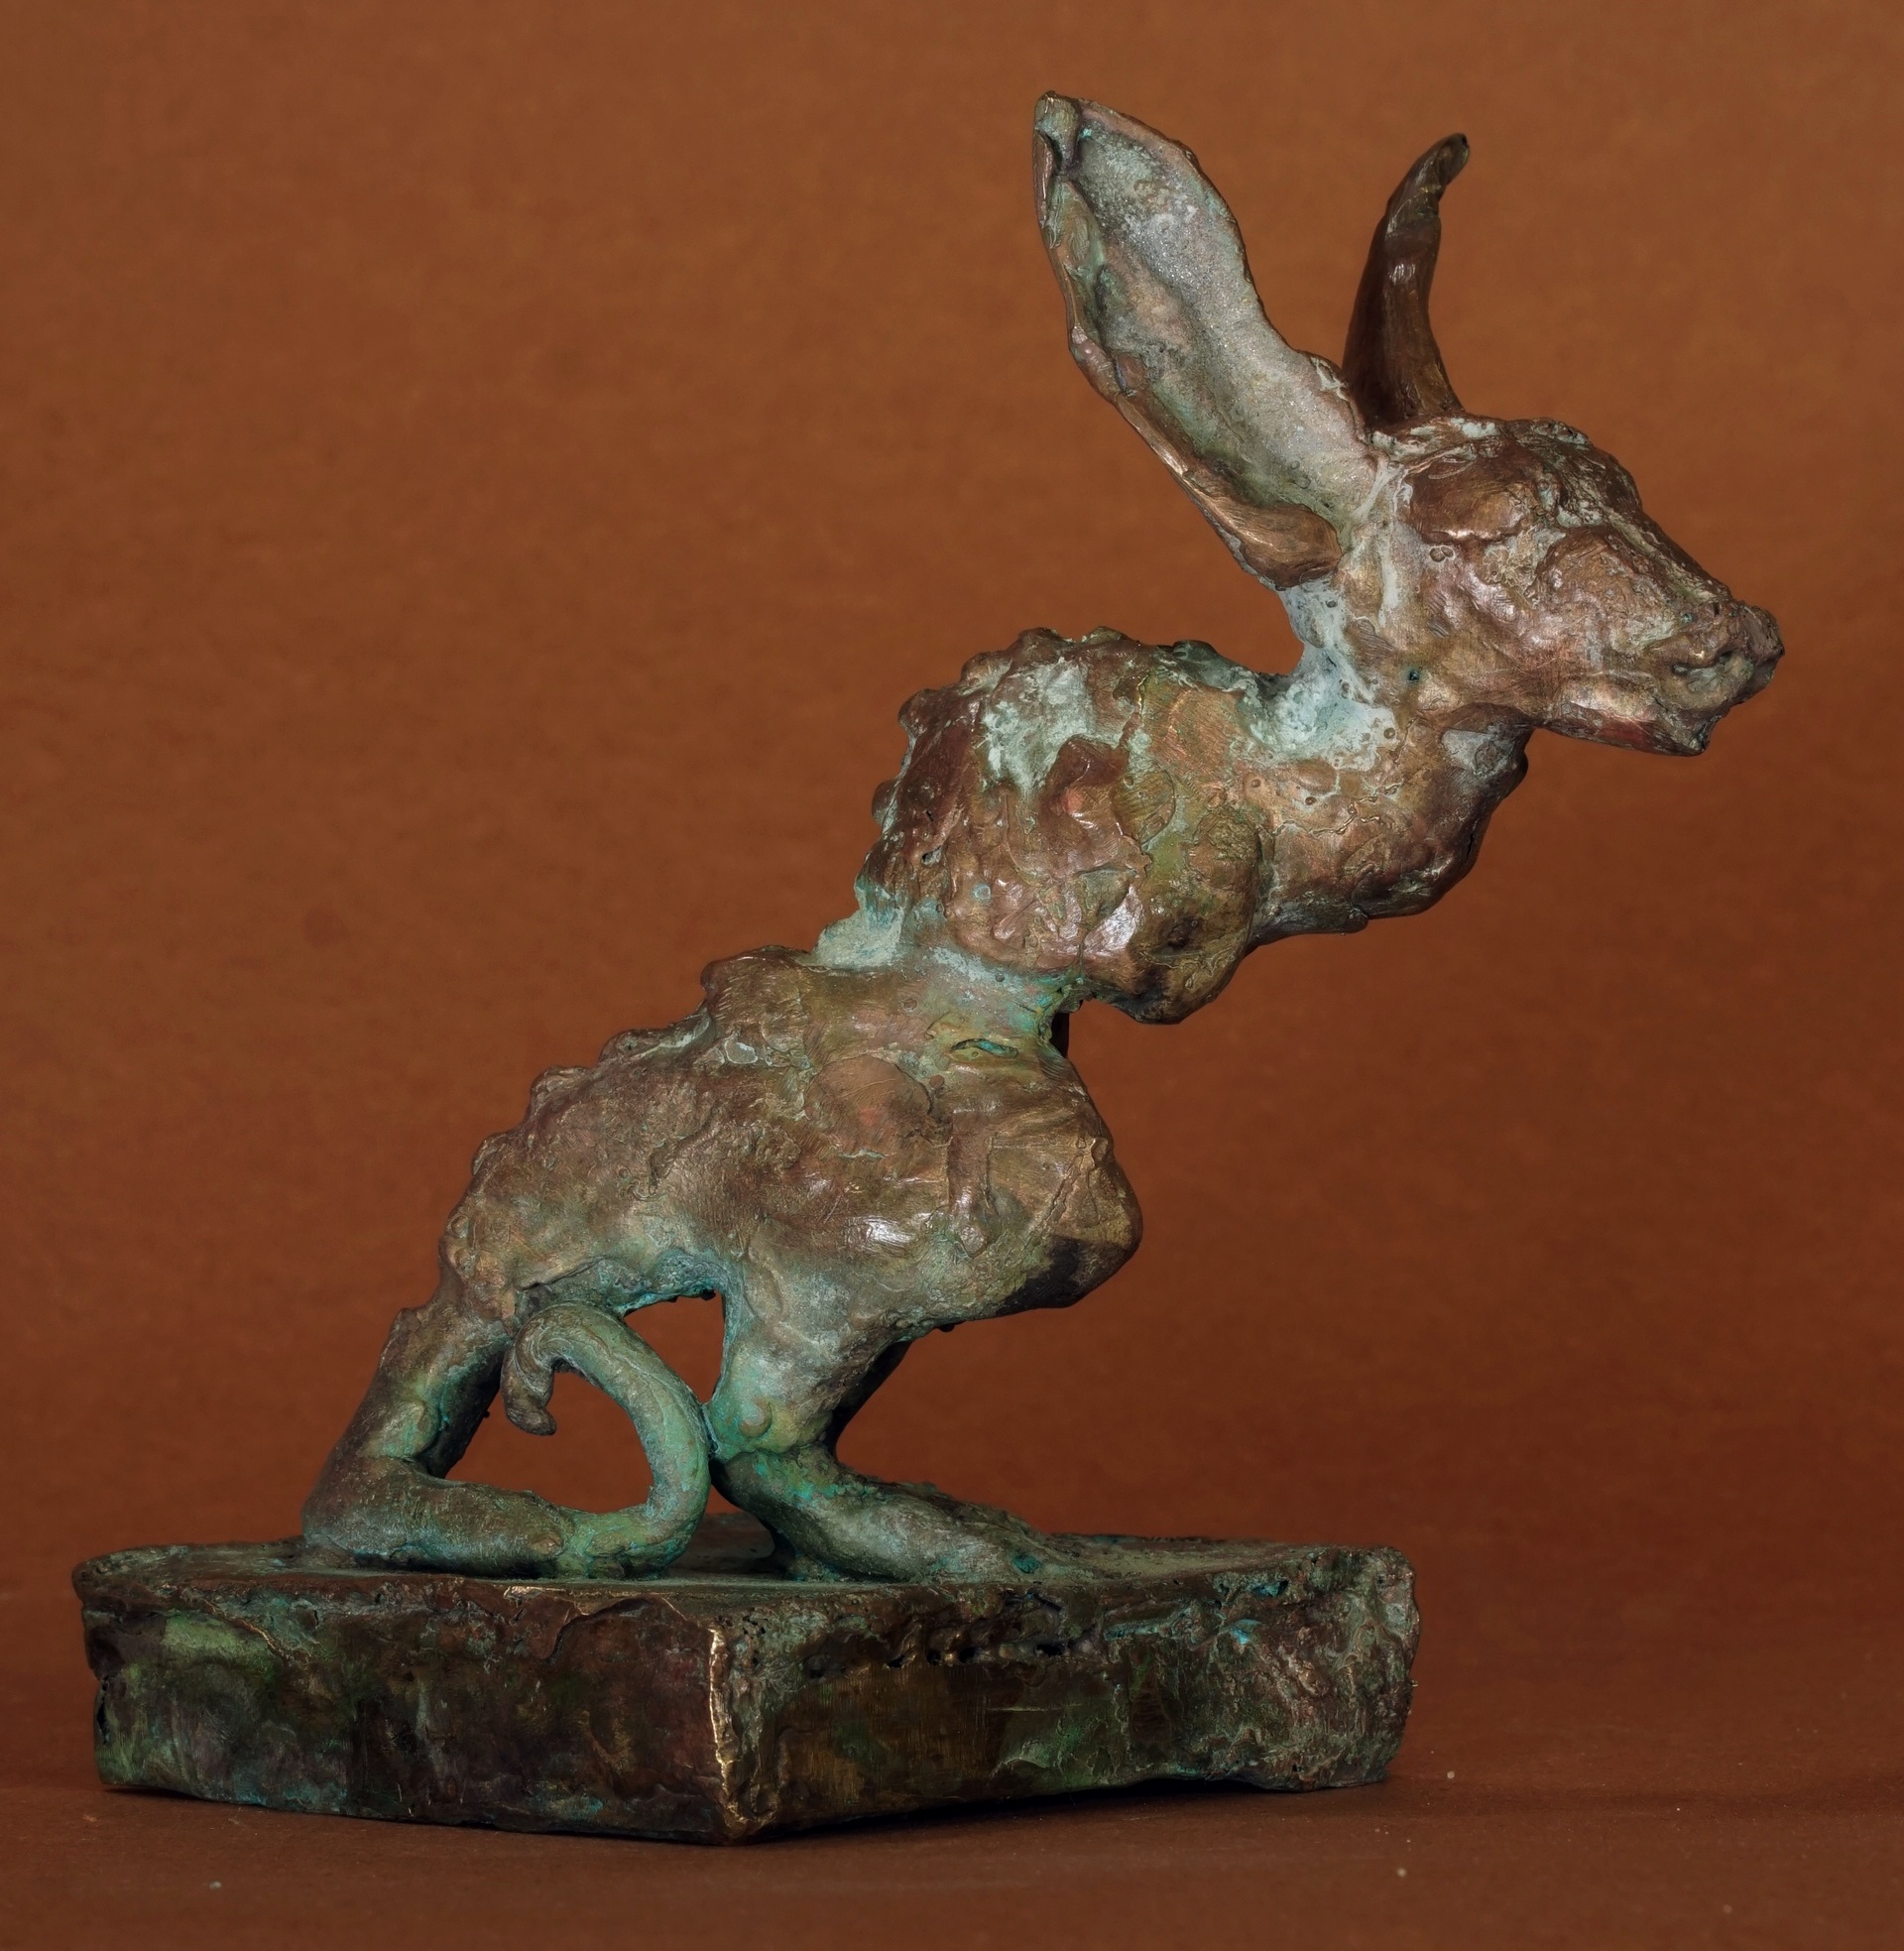 J.Osika - zdjęcie przedstawia rzeźbę fantastycznego zwierzęcia inspirowanego gryzoniami, w wielobarwnej różowo-zielono-złoto-brązowej patynie, wykonaną z mosiądzu.